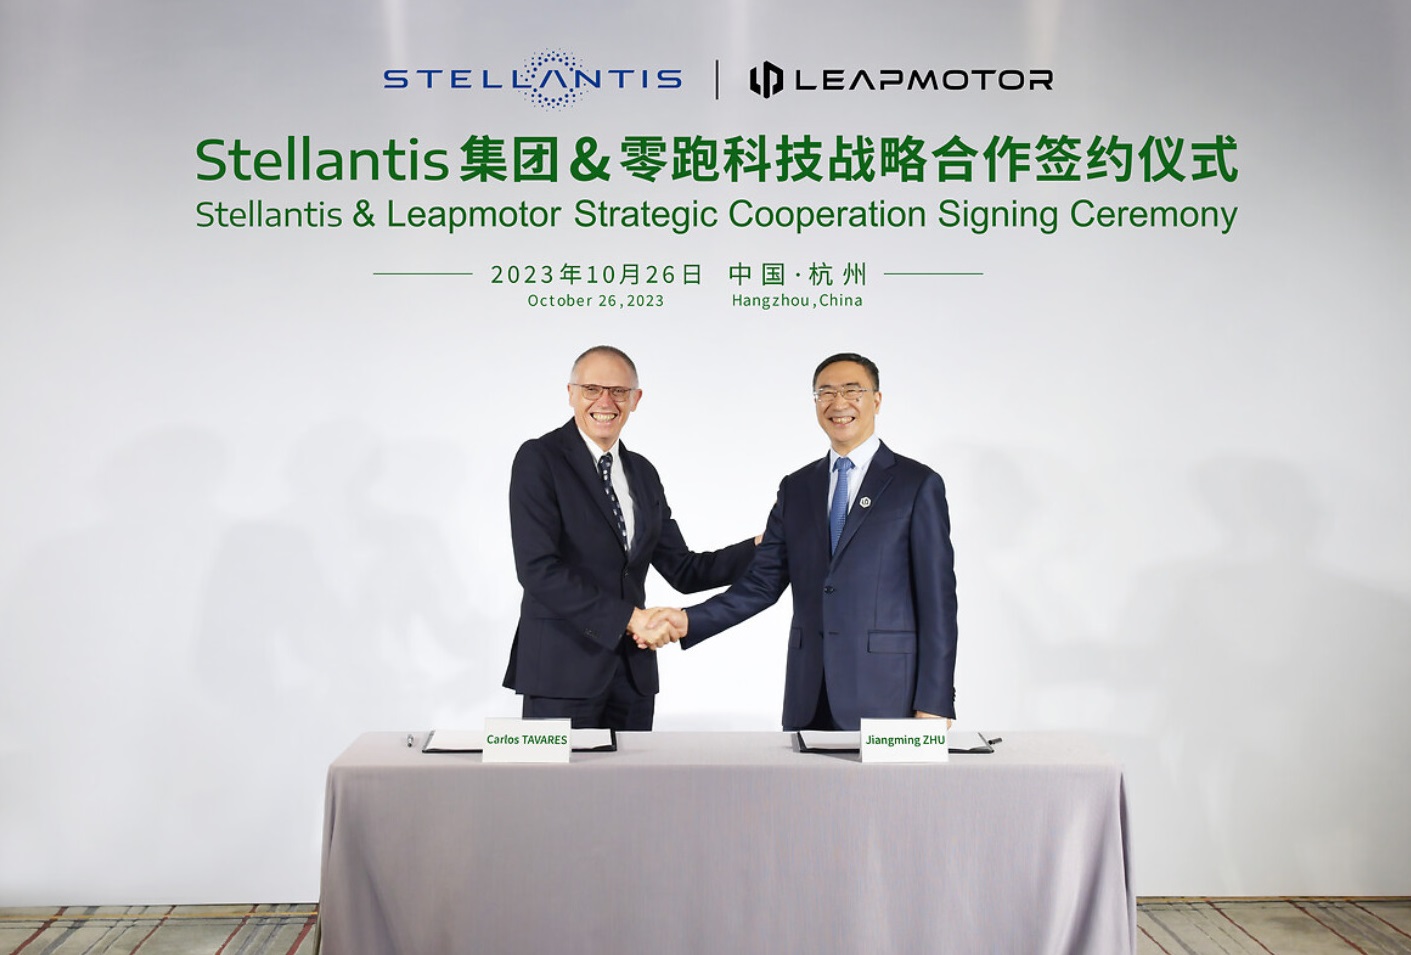 Acordo permitirá que os veículos da Leapmotor sejam construídos nas fábricas da Stellantis em todo o mundo